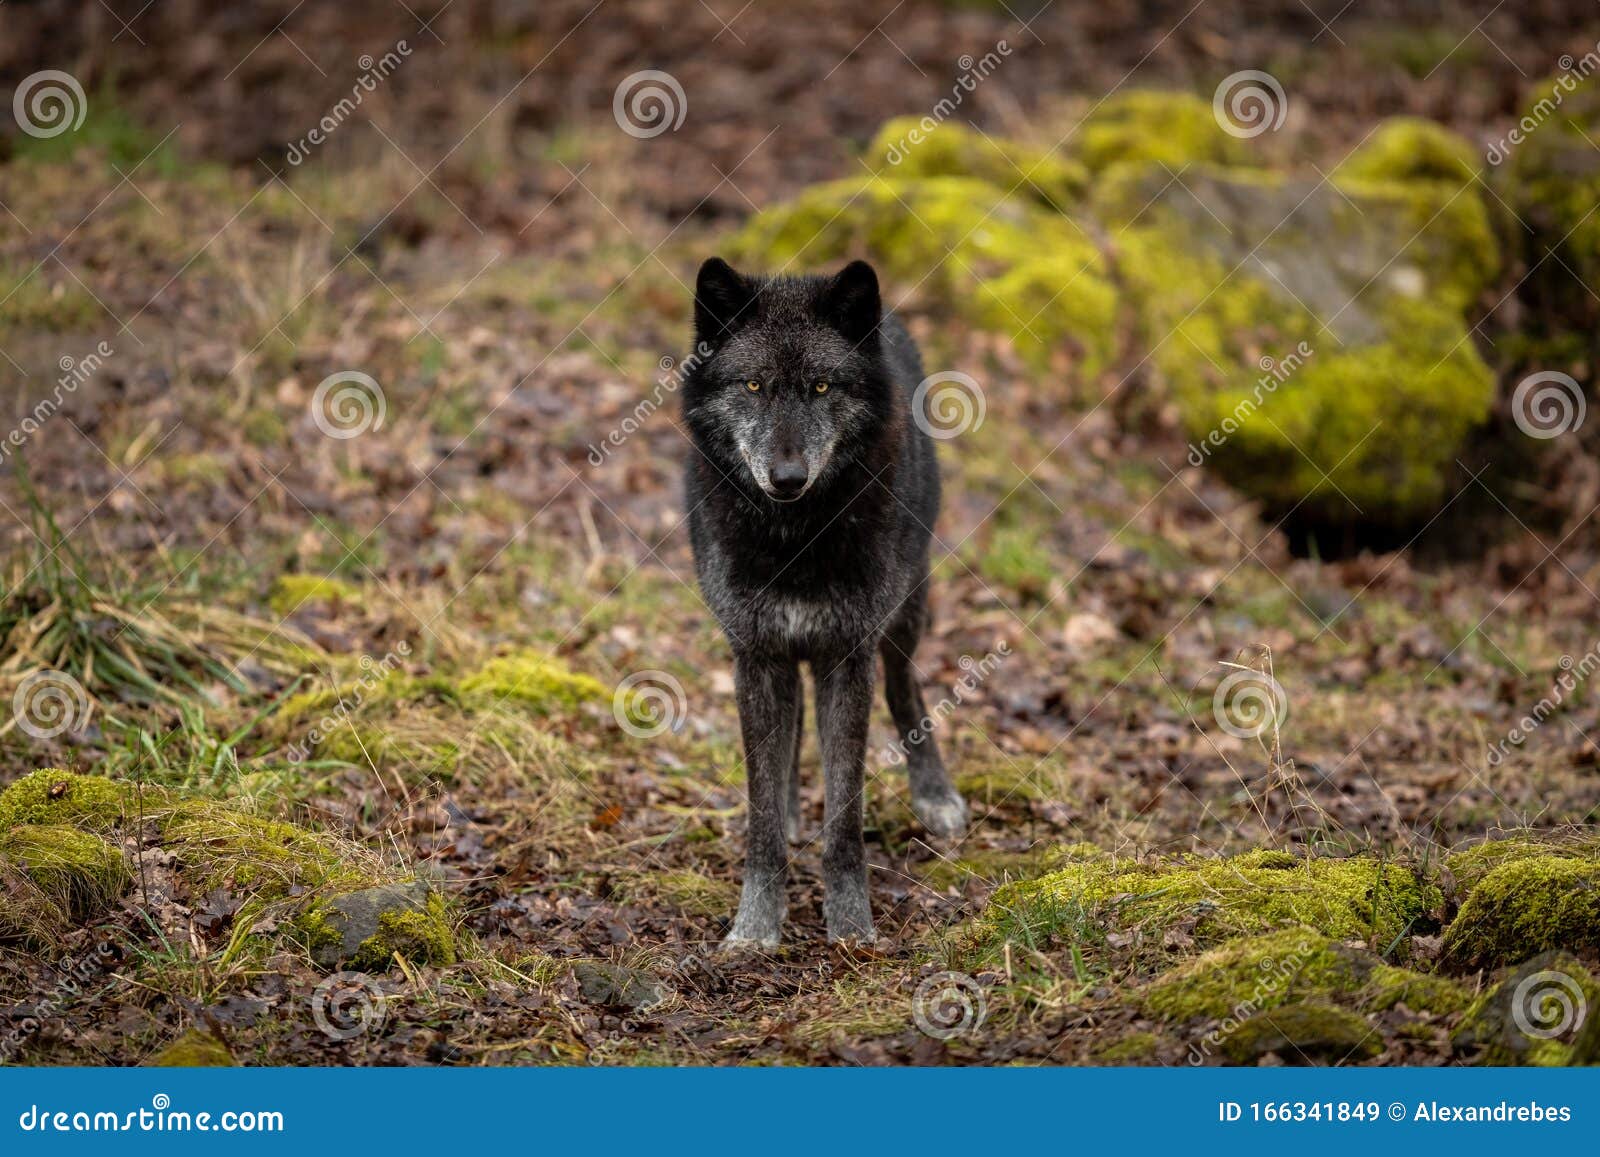 森林中黑狼的画像 库存照片. 图片 包括有 扫视, 眼睛, 犬属, 食肉动物, 猎人, 背包, 敌意, 户外 - 162034464